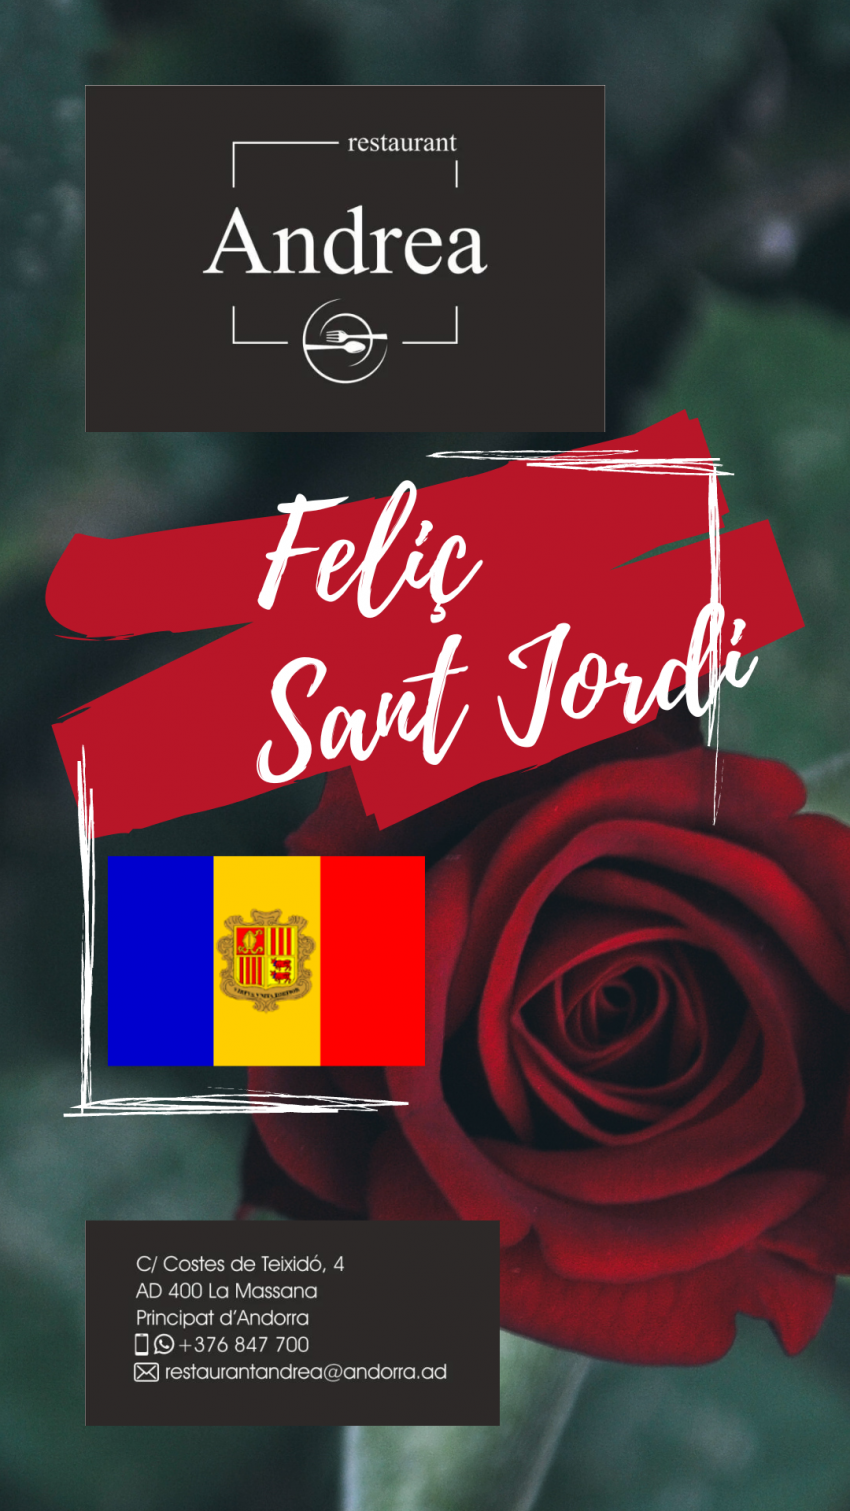 Restaurant Andrea Andorra “Obrim les pàgines de les nostres vides i omplim-les de literatura, de roses, d’amor, de creativitat… Feliç dia de Sant Jordi!“.